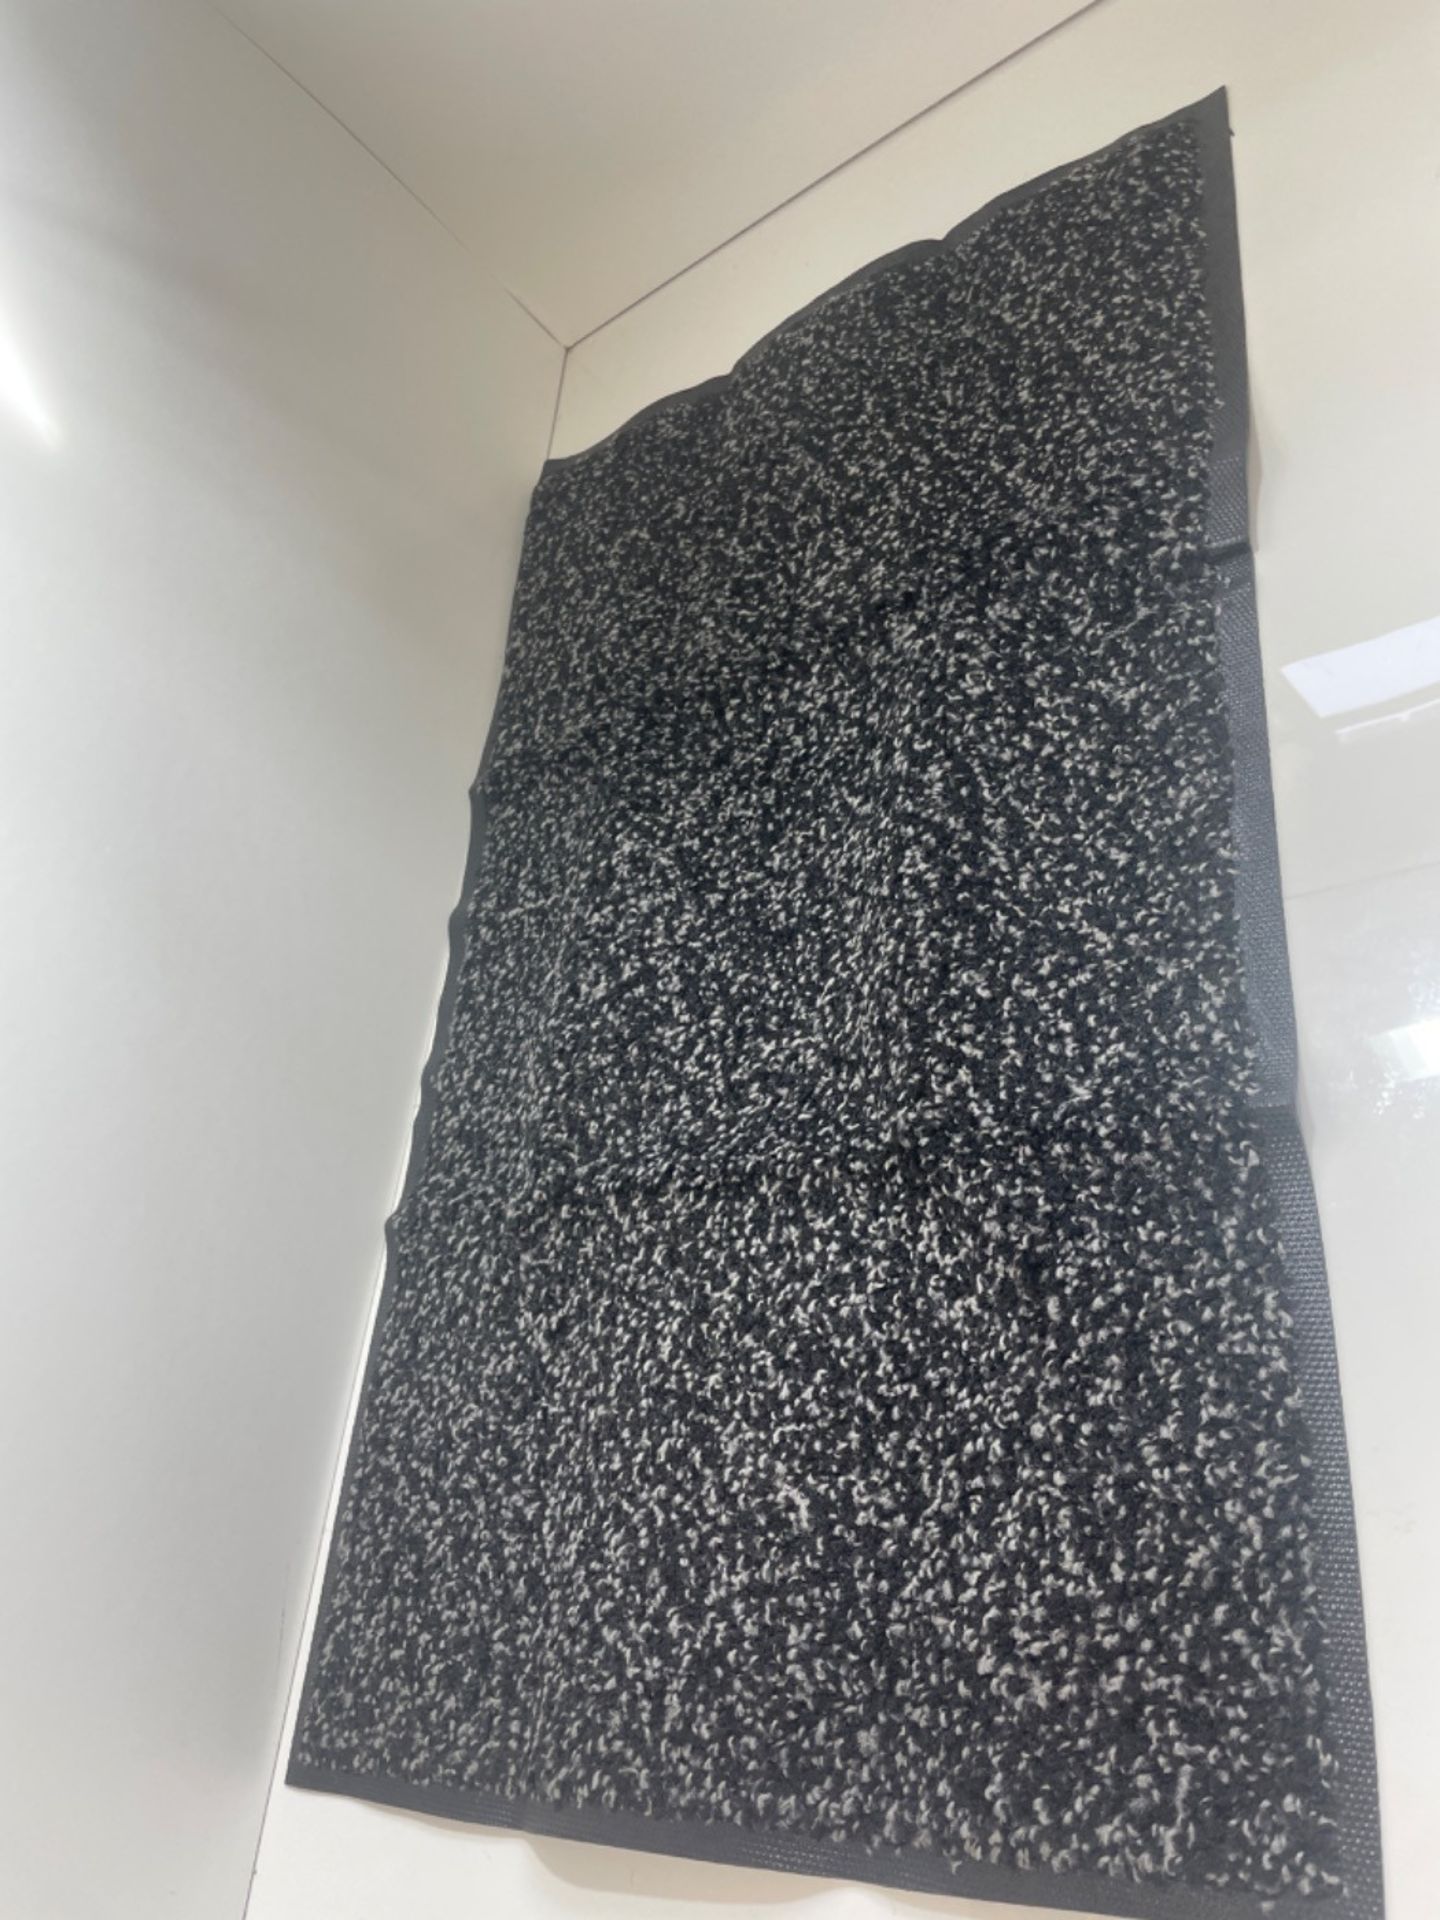 Mibao Door Mat Dirt Trapper for Indoor and Outdoor, 51.5x81.5 Cm, Black Doormat, Washable Barrier M - Image 3 of 3